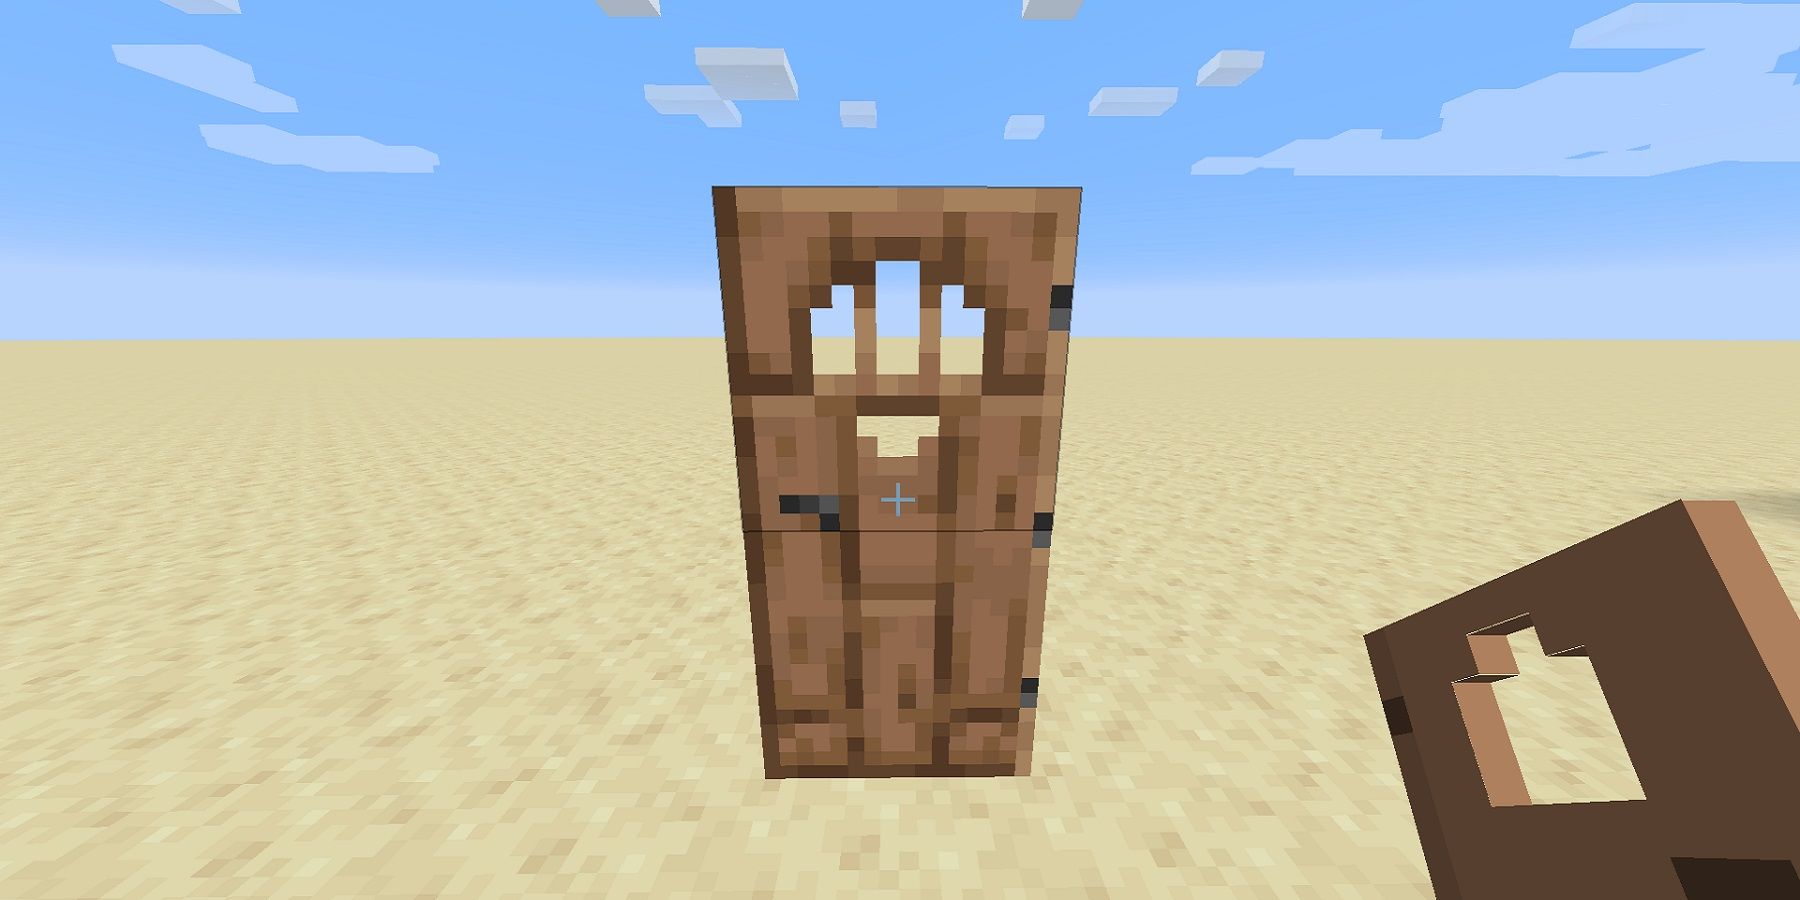 Capture d'écran de Minecraft montrant une porte en bois au milieu d'une plaine désertique plate.